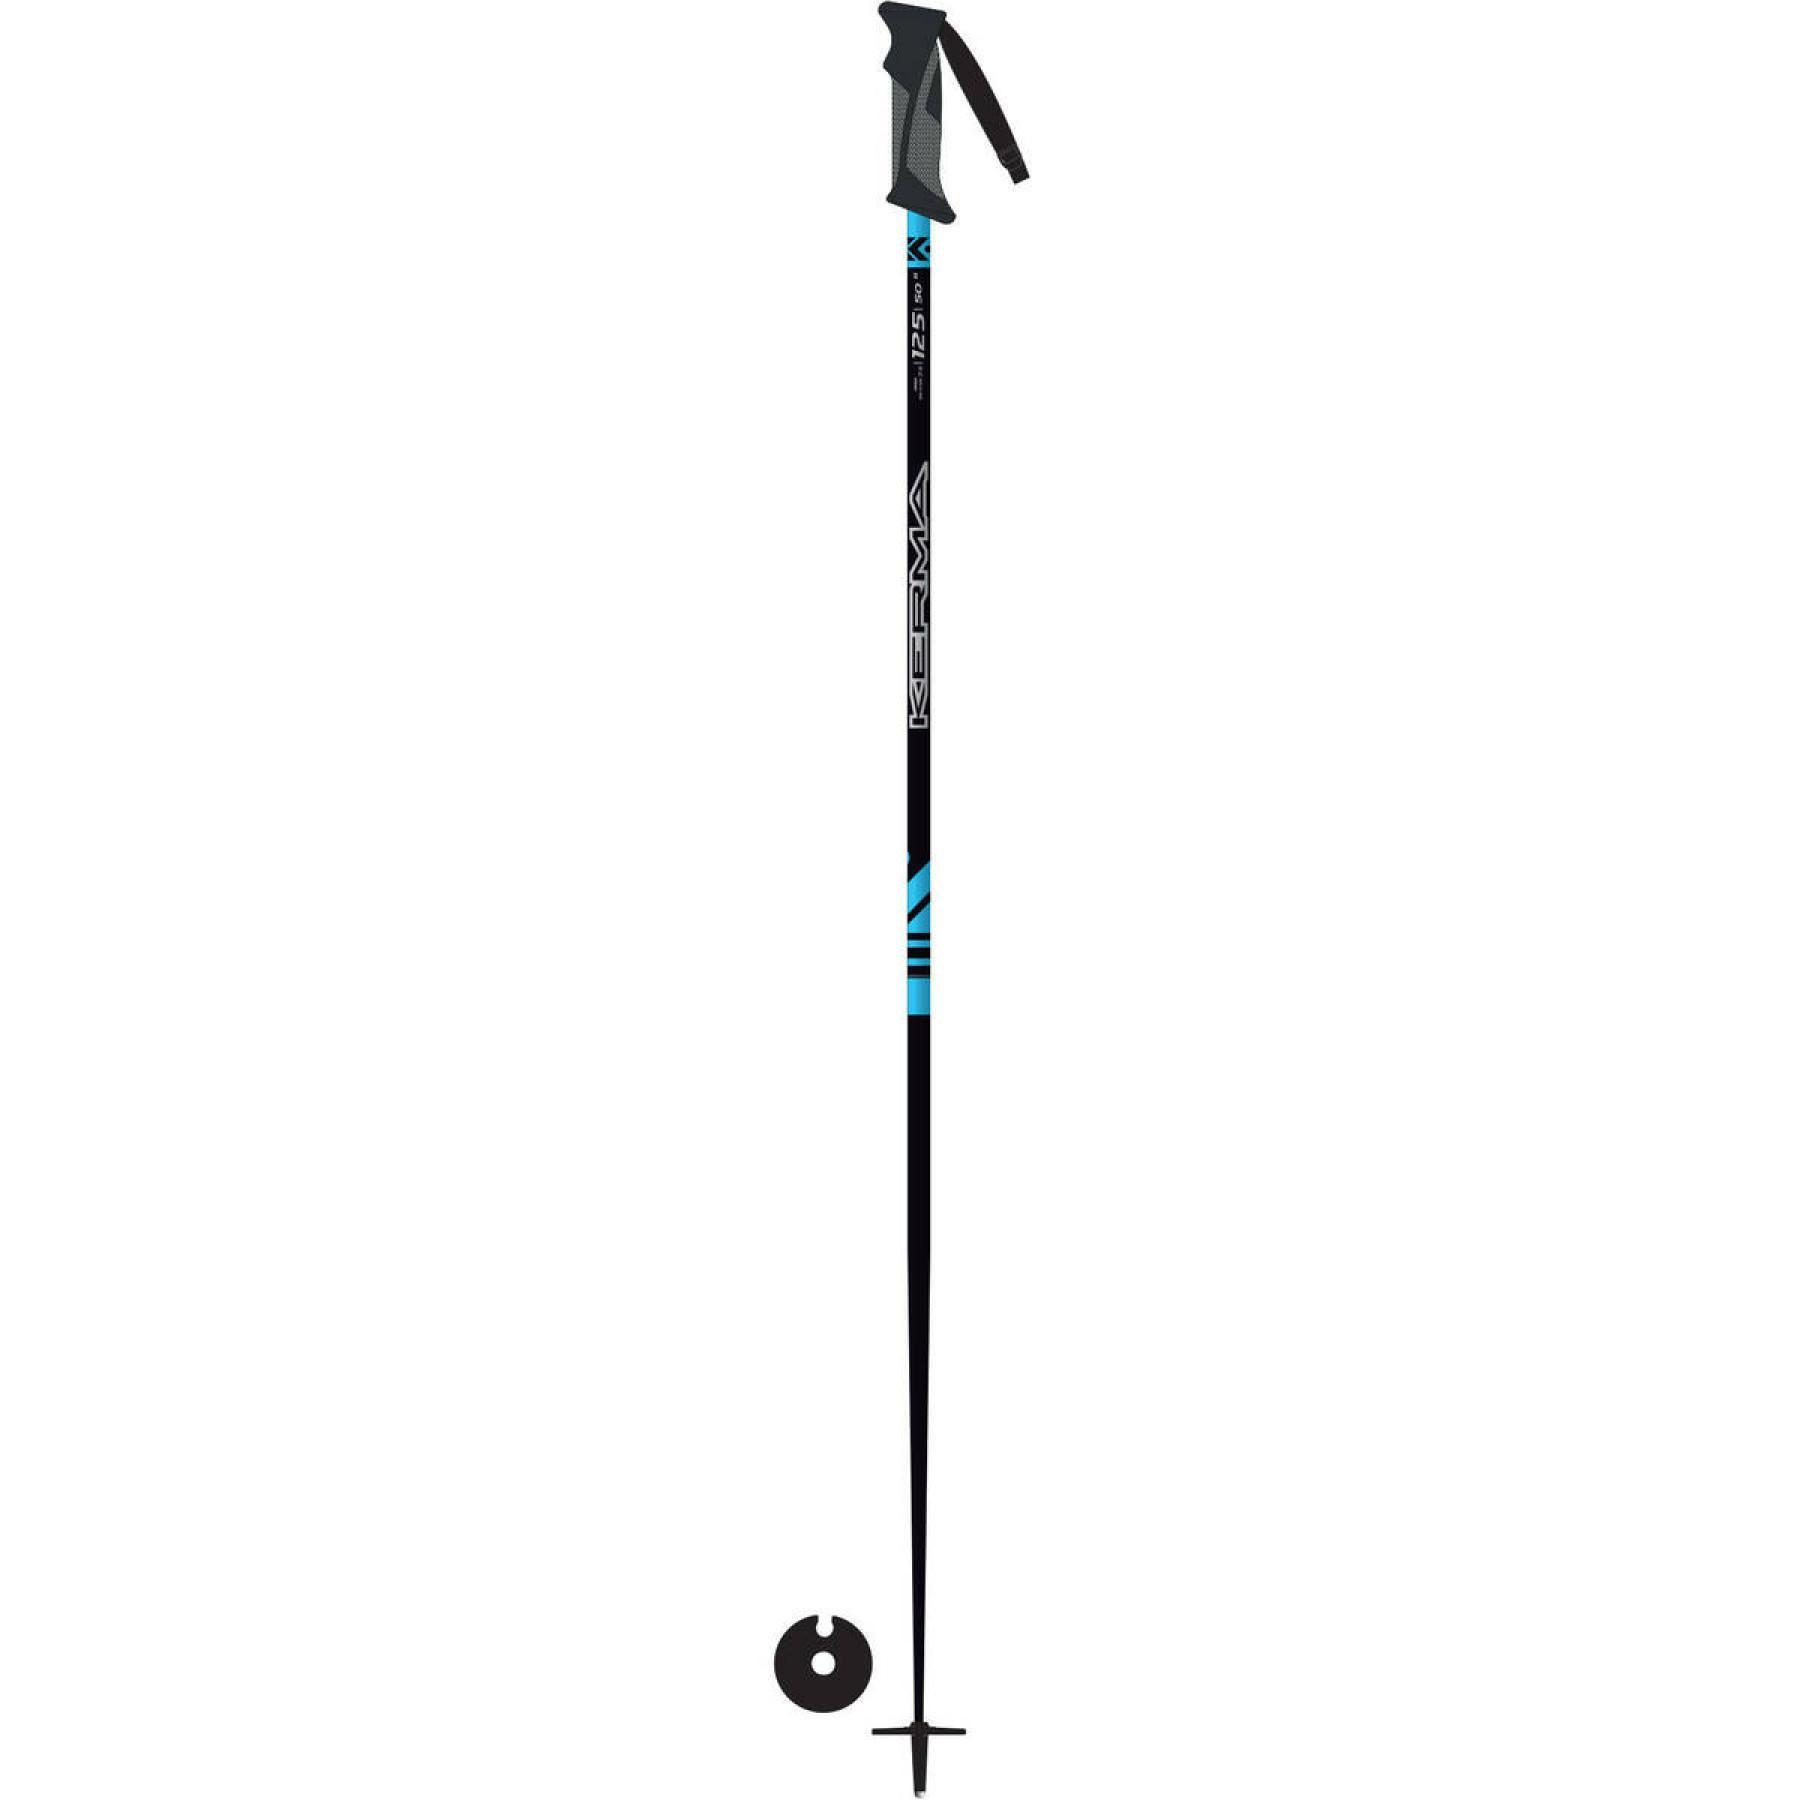 Ski poles Kerma fiber sr